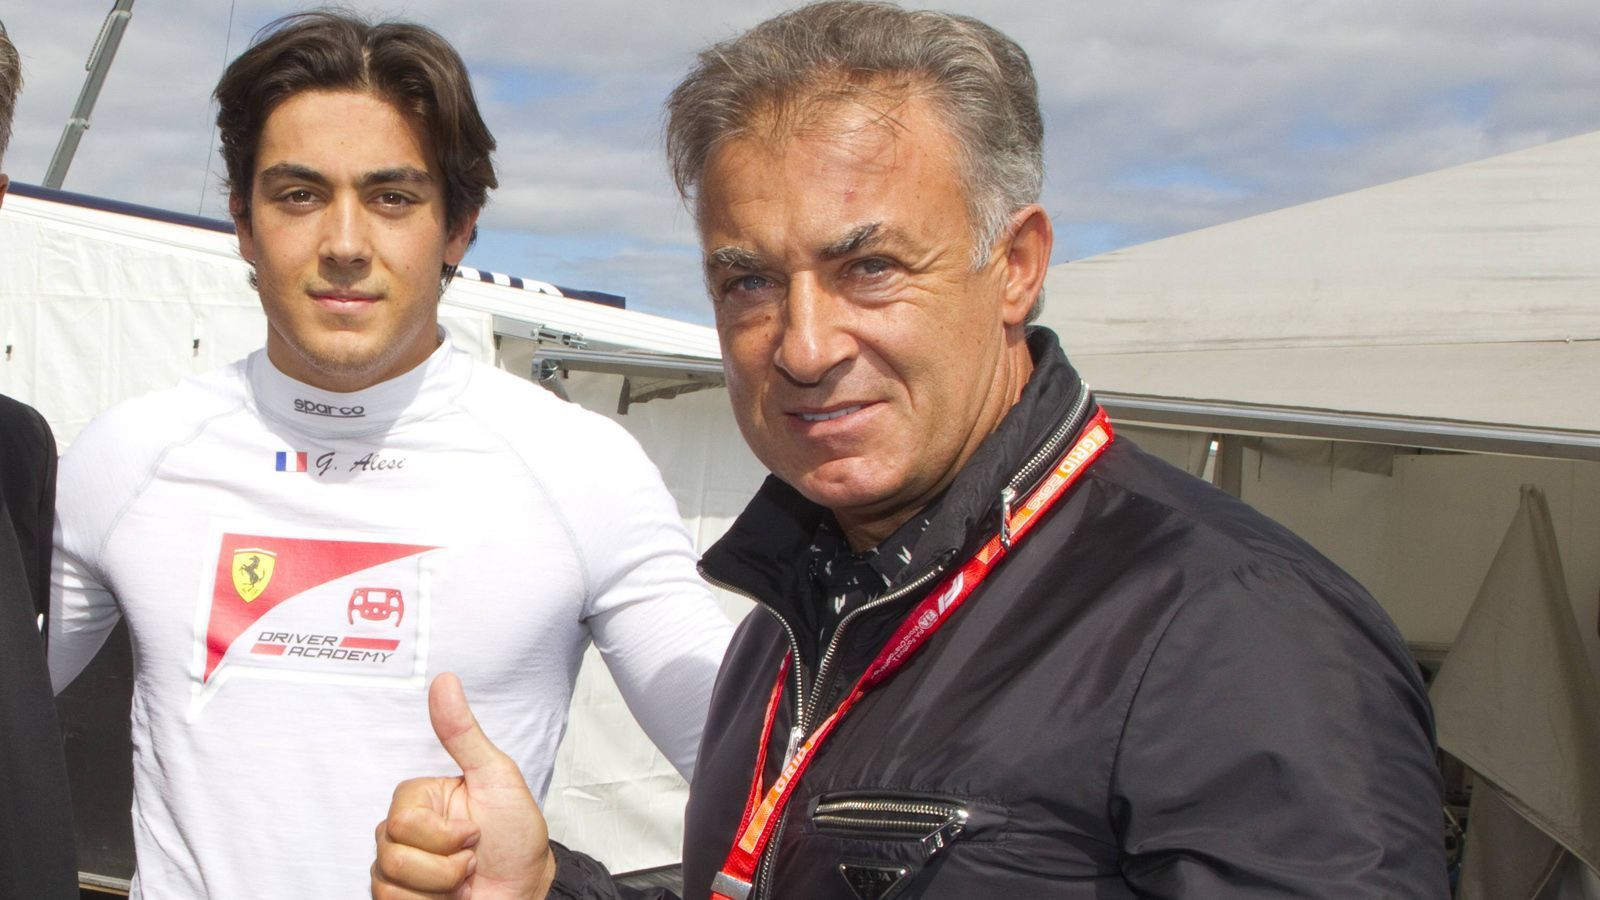 
                <strong>Giuliano Alesi</strong><br>
                Jean Alesi (Foto, rechts) zählte einst zu den großen Stars der Formel 1, fuhr von 1989 bis 2001 in der "Königsklasse", gewann zwar lediglich ein Rennen, holte aber insgesamt 241 WM-Punkte. Sein mittlerweile 20-jähriger Sohn Giuliano hat gute Chancen, ebenfalls eines Tages in der Formel 1 zu starten. Momentan fährt der junge Alesi für BWT HWA Racelab in der Formel 2 und belegte im Auftaktrennen Platz 6. Er gehört dem Nachwuchsprogramm von Ferrari an.    
              